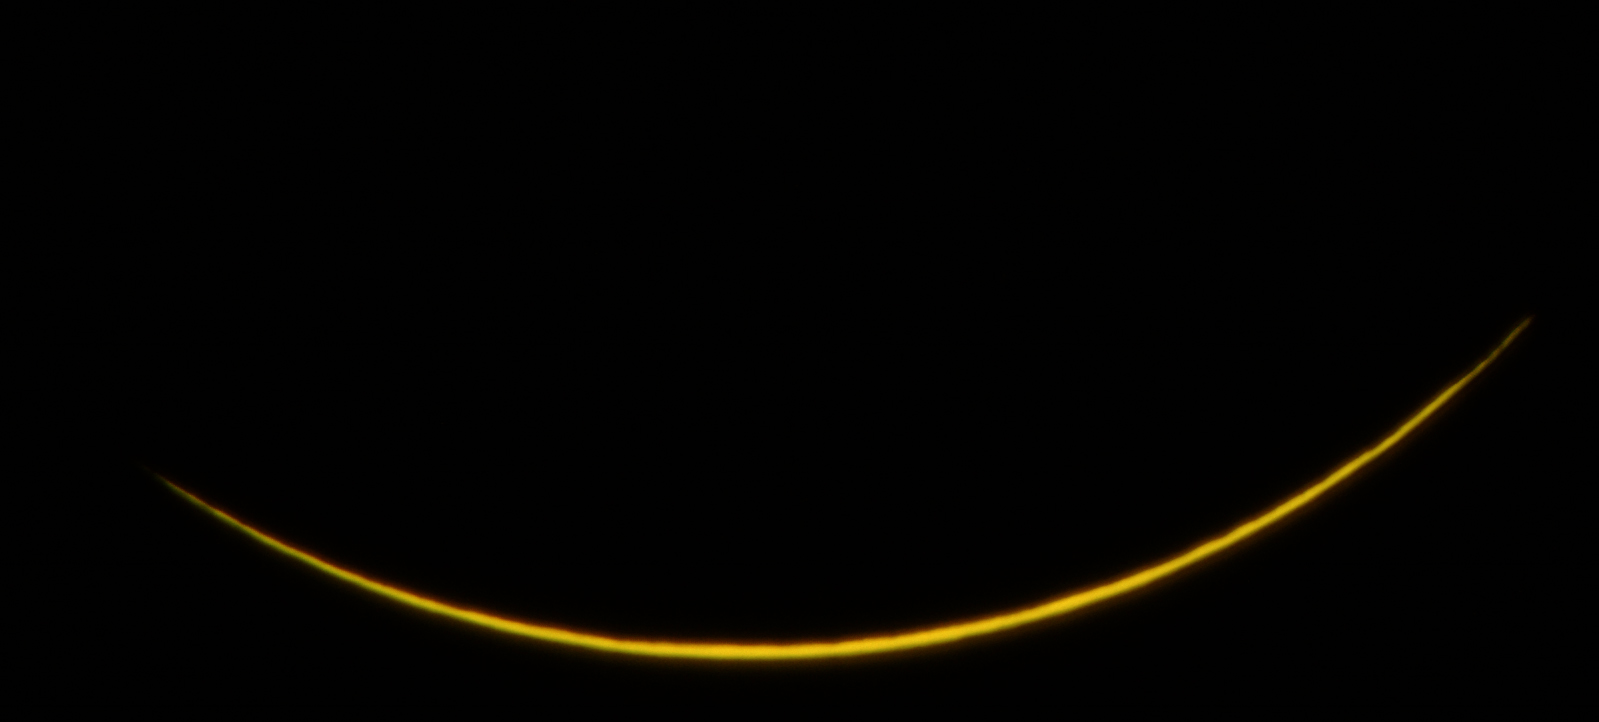 Final Crescent-scope.jpg